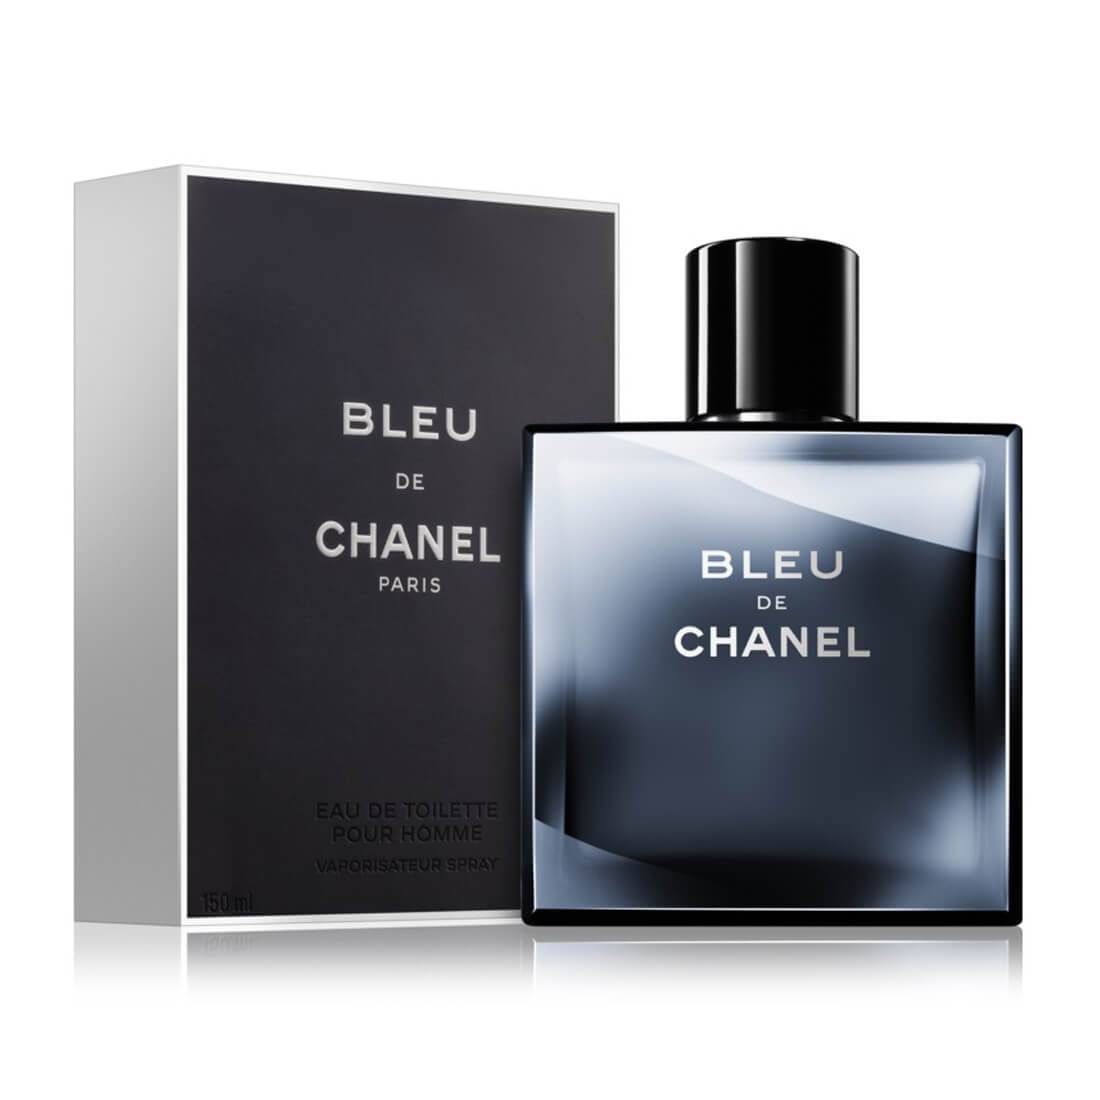 Chanel Bleu EDT 150ml - Masculine Fragrance For Men